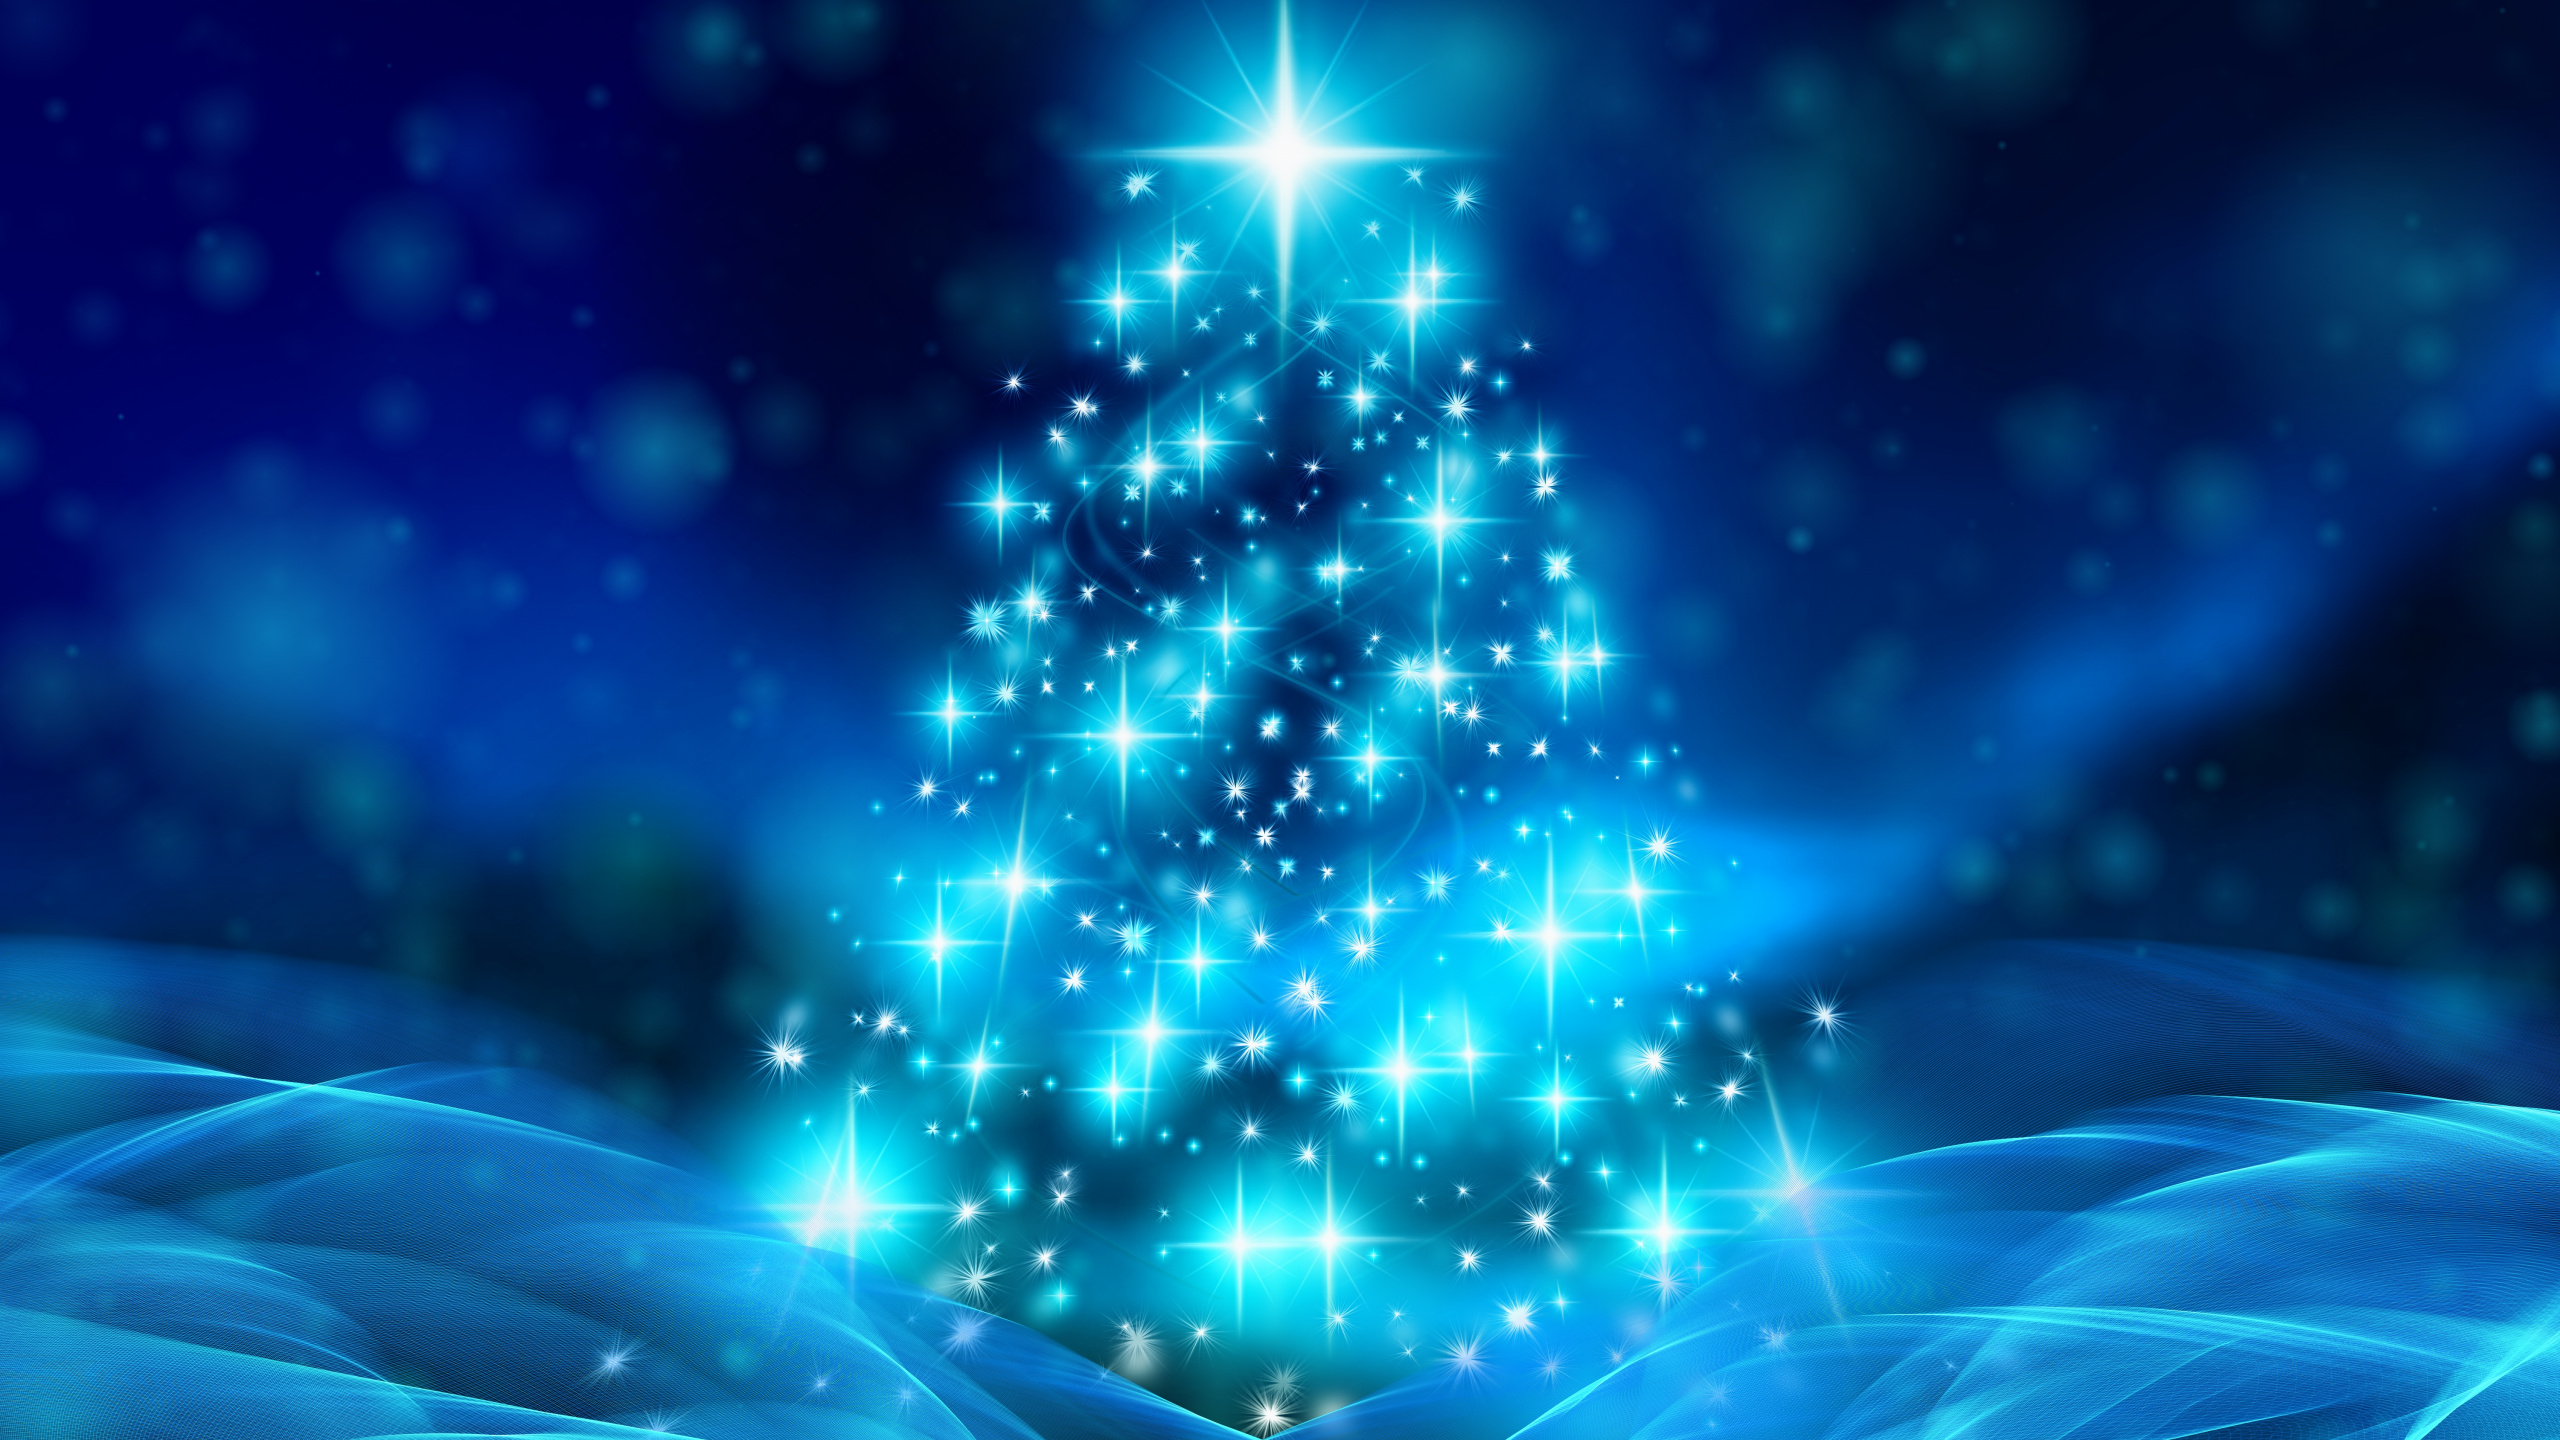 Weihnachten, Weihnachtsbaum, Weihnachtsdekoration, Blau, Baum. Wallpaper in 2560x1440 Resolution